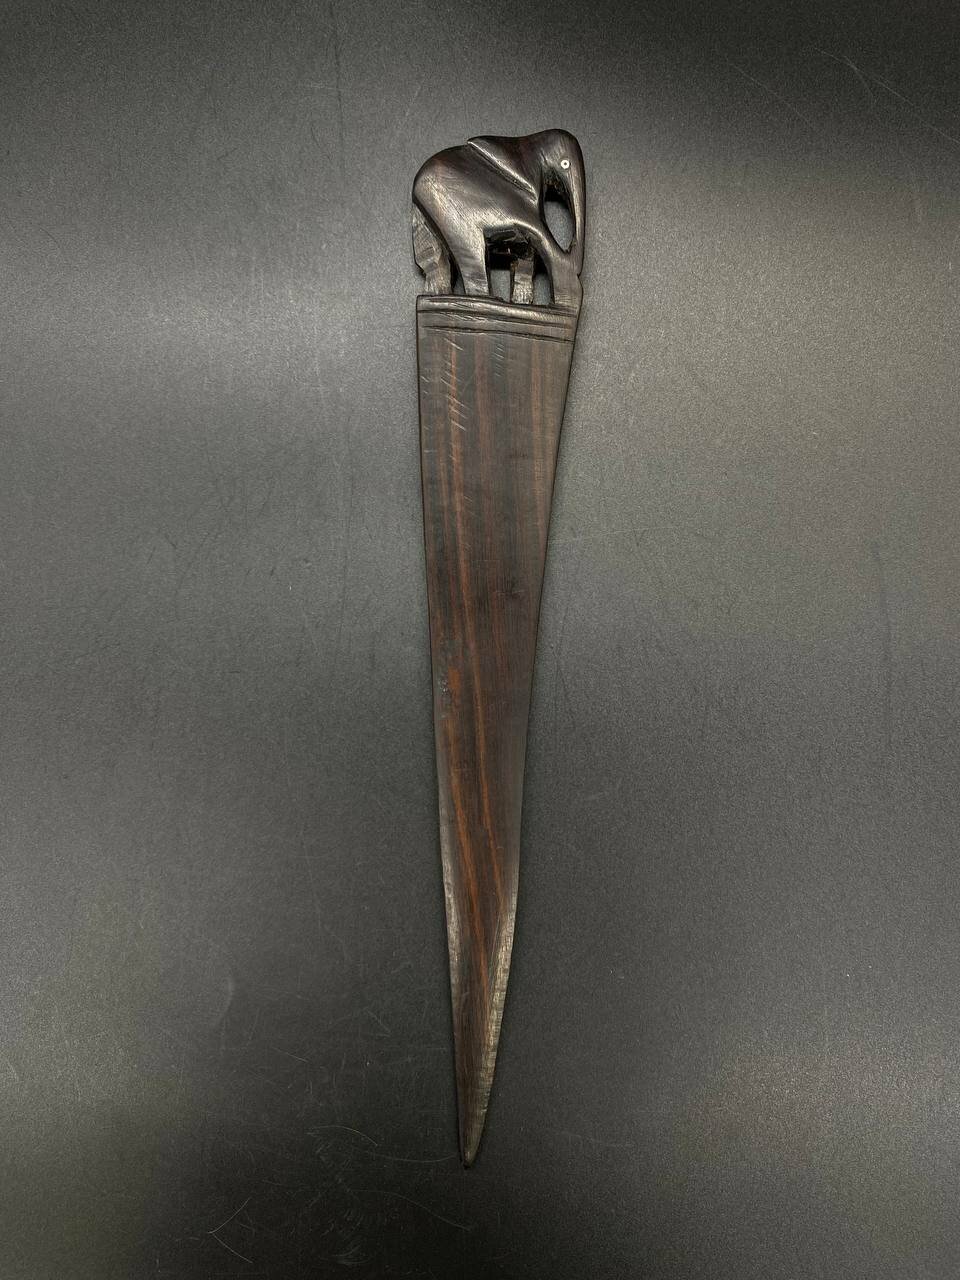 Эпистолярный нож для писем и бумаг с завершением в форме слона, дерево, резьба